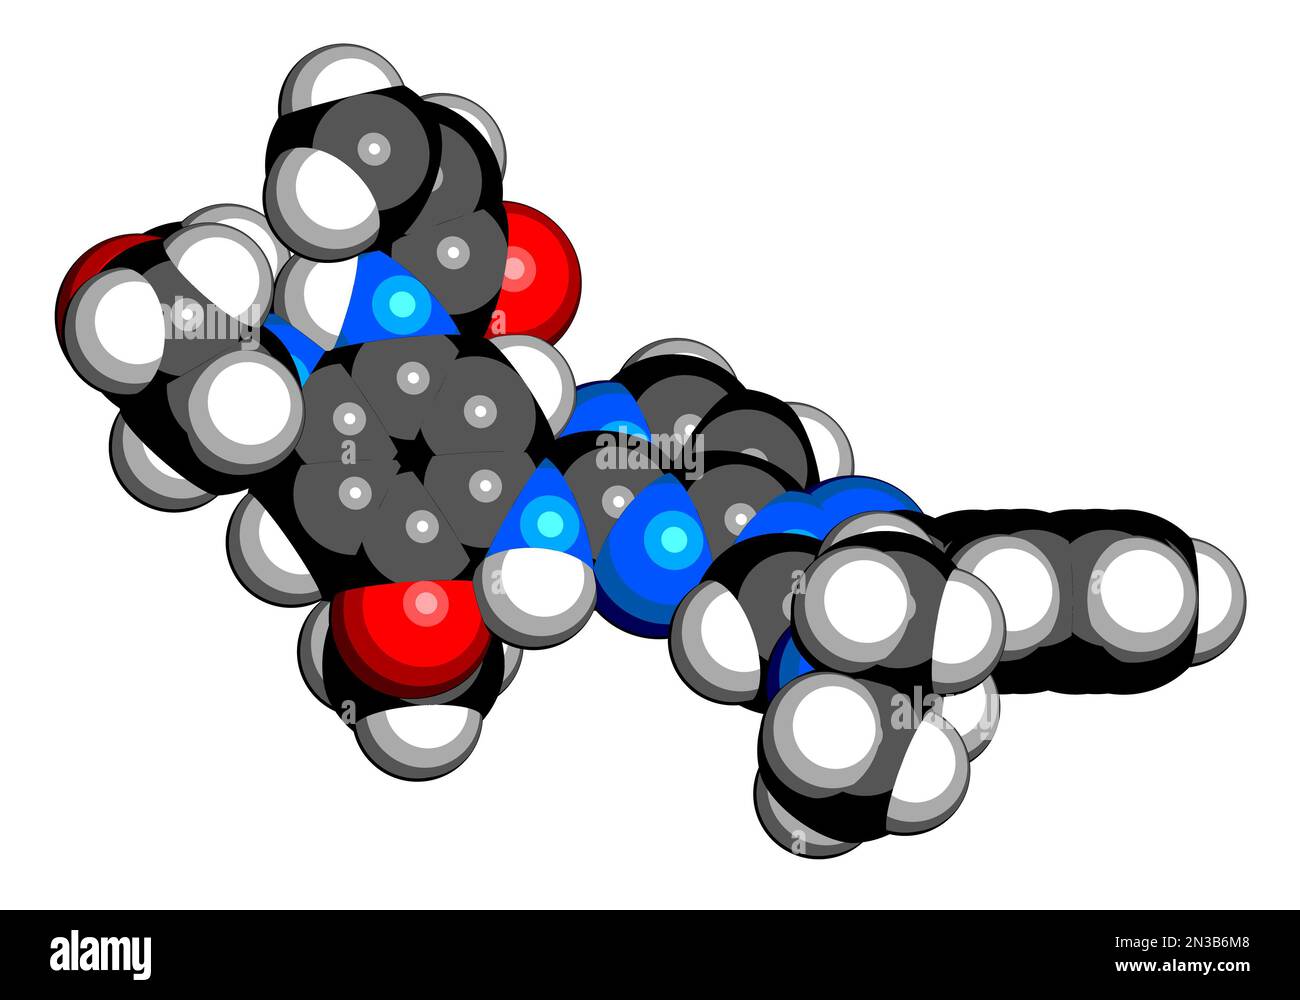 Molécule de médicament pour le cancer Lazertinib. 3D rendu. Les atomes sont représentés sous forme de sphères avec un codage couleur conventionnel : hydrogène (blanc), carbone (noir), nitr Banque D'Images